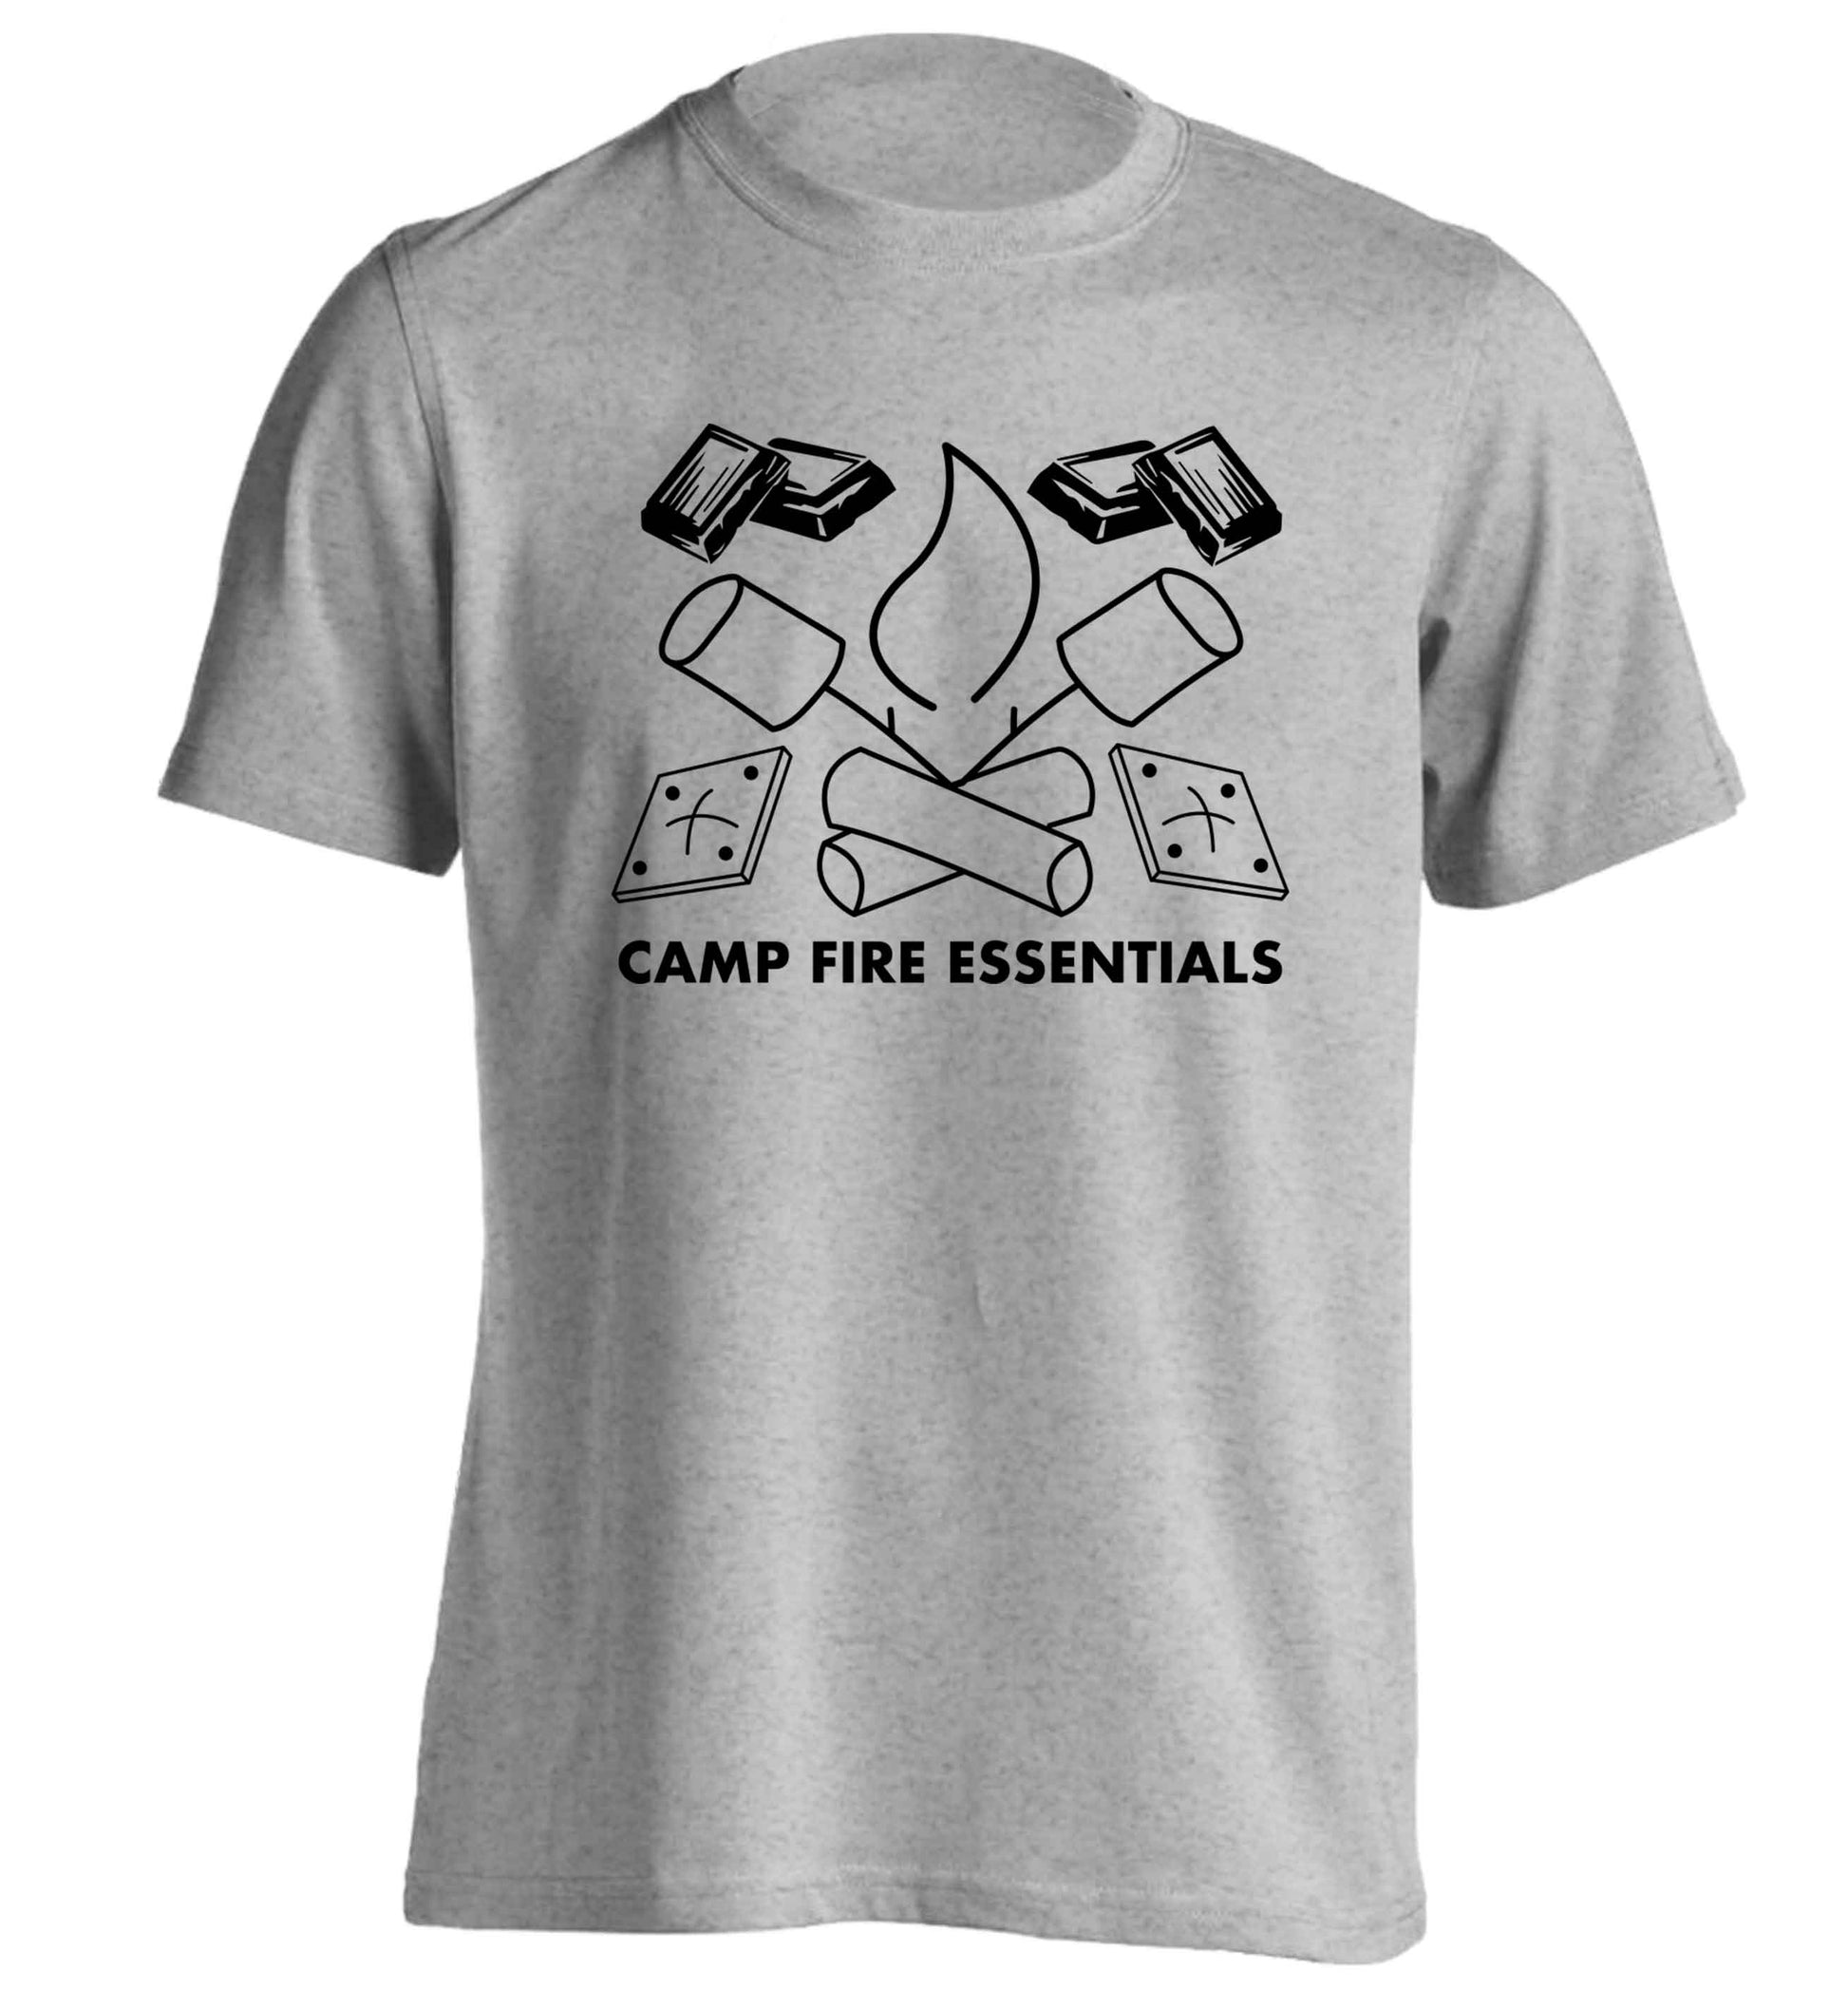 Campfire essentials adults unisex grey Tshirt 2XL